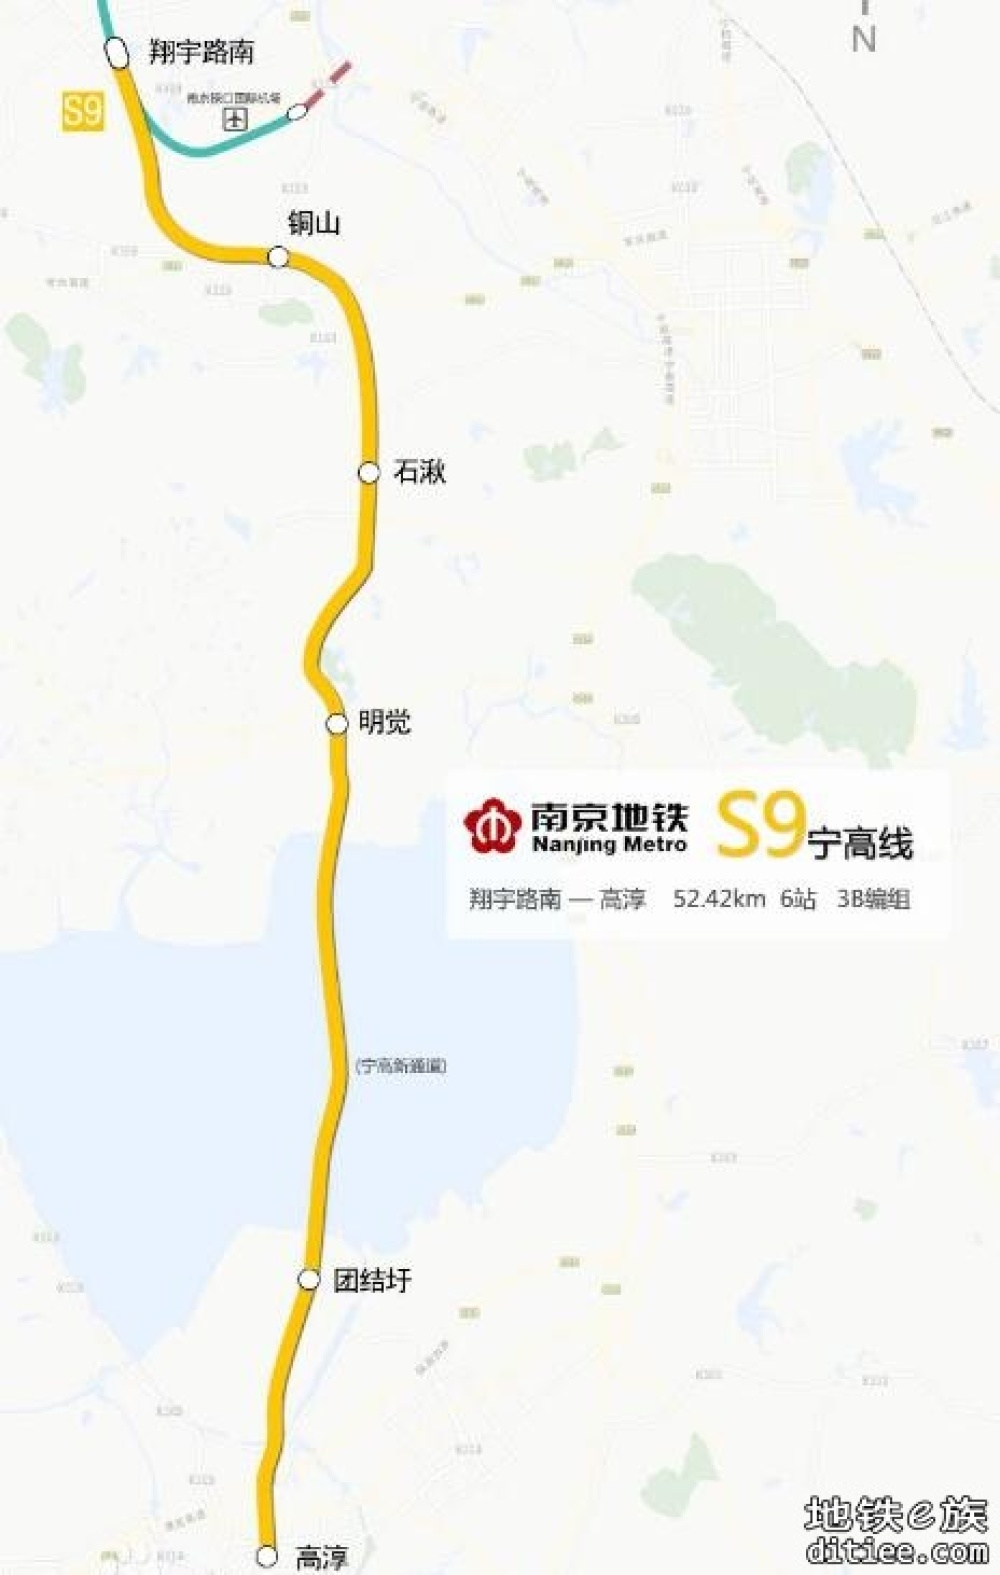 地铁S9号线何时能够南延至高淳老街呀？